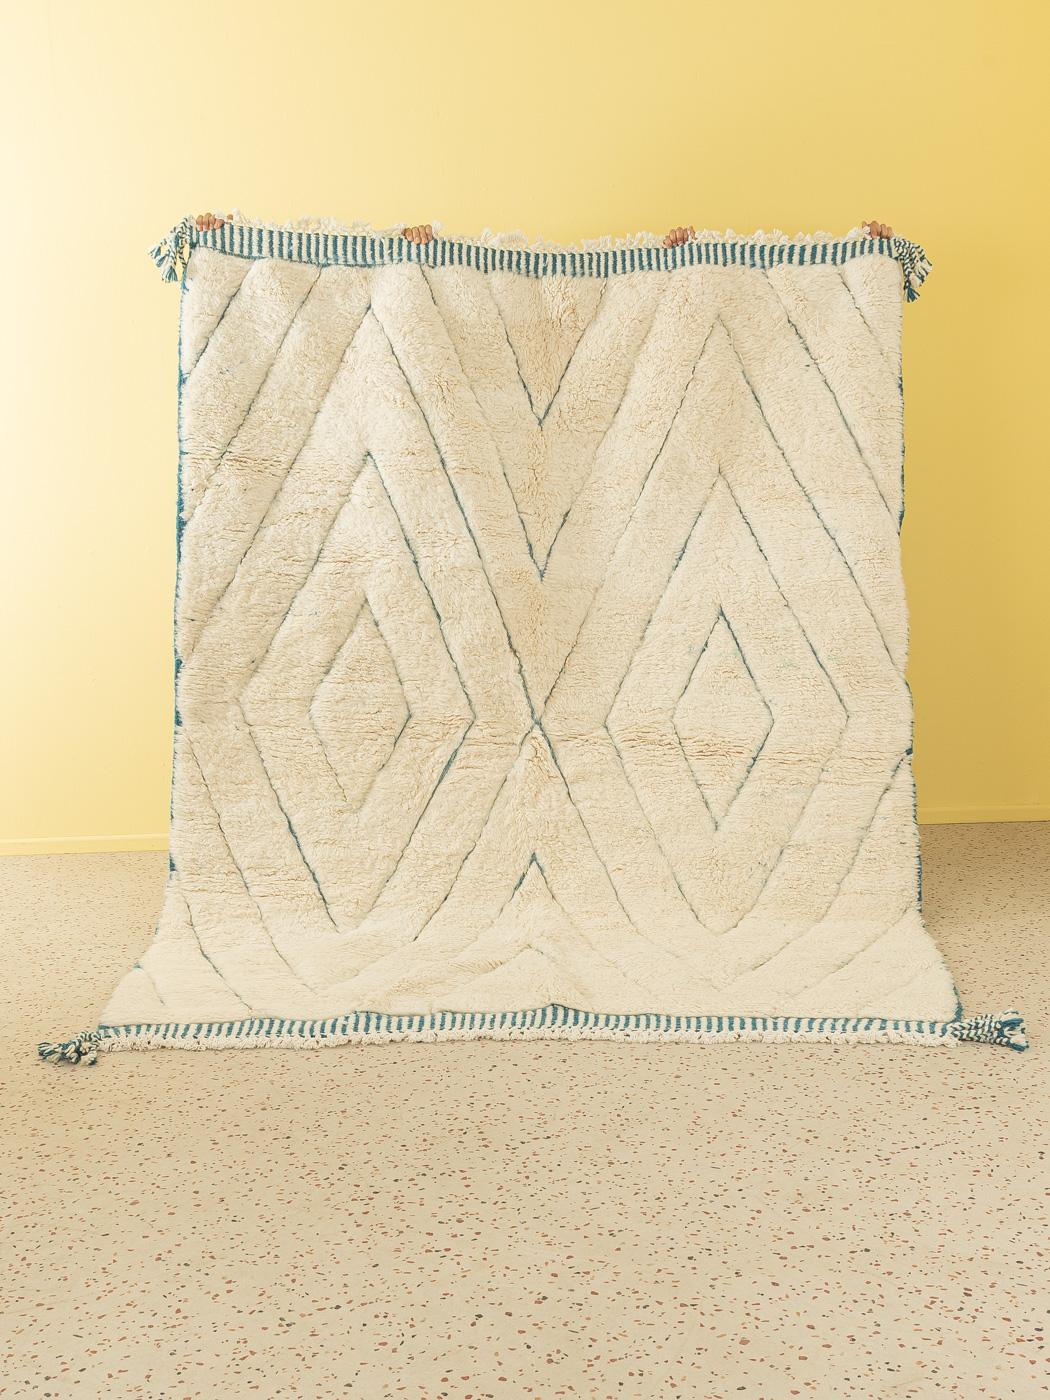 Blue diamond est un tapis contemporain 100% laine - épais et doux, confortable sous le pied. Nos tapis berbères sont tissés et noués à la main par des femmes amazighes dans les montagnes de l'Atlas. Ces communautés fabriquent des tapis depuis des